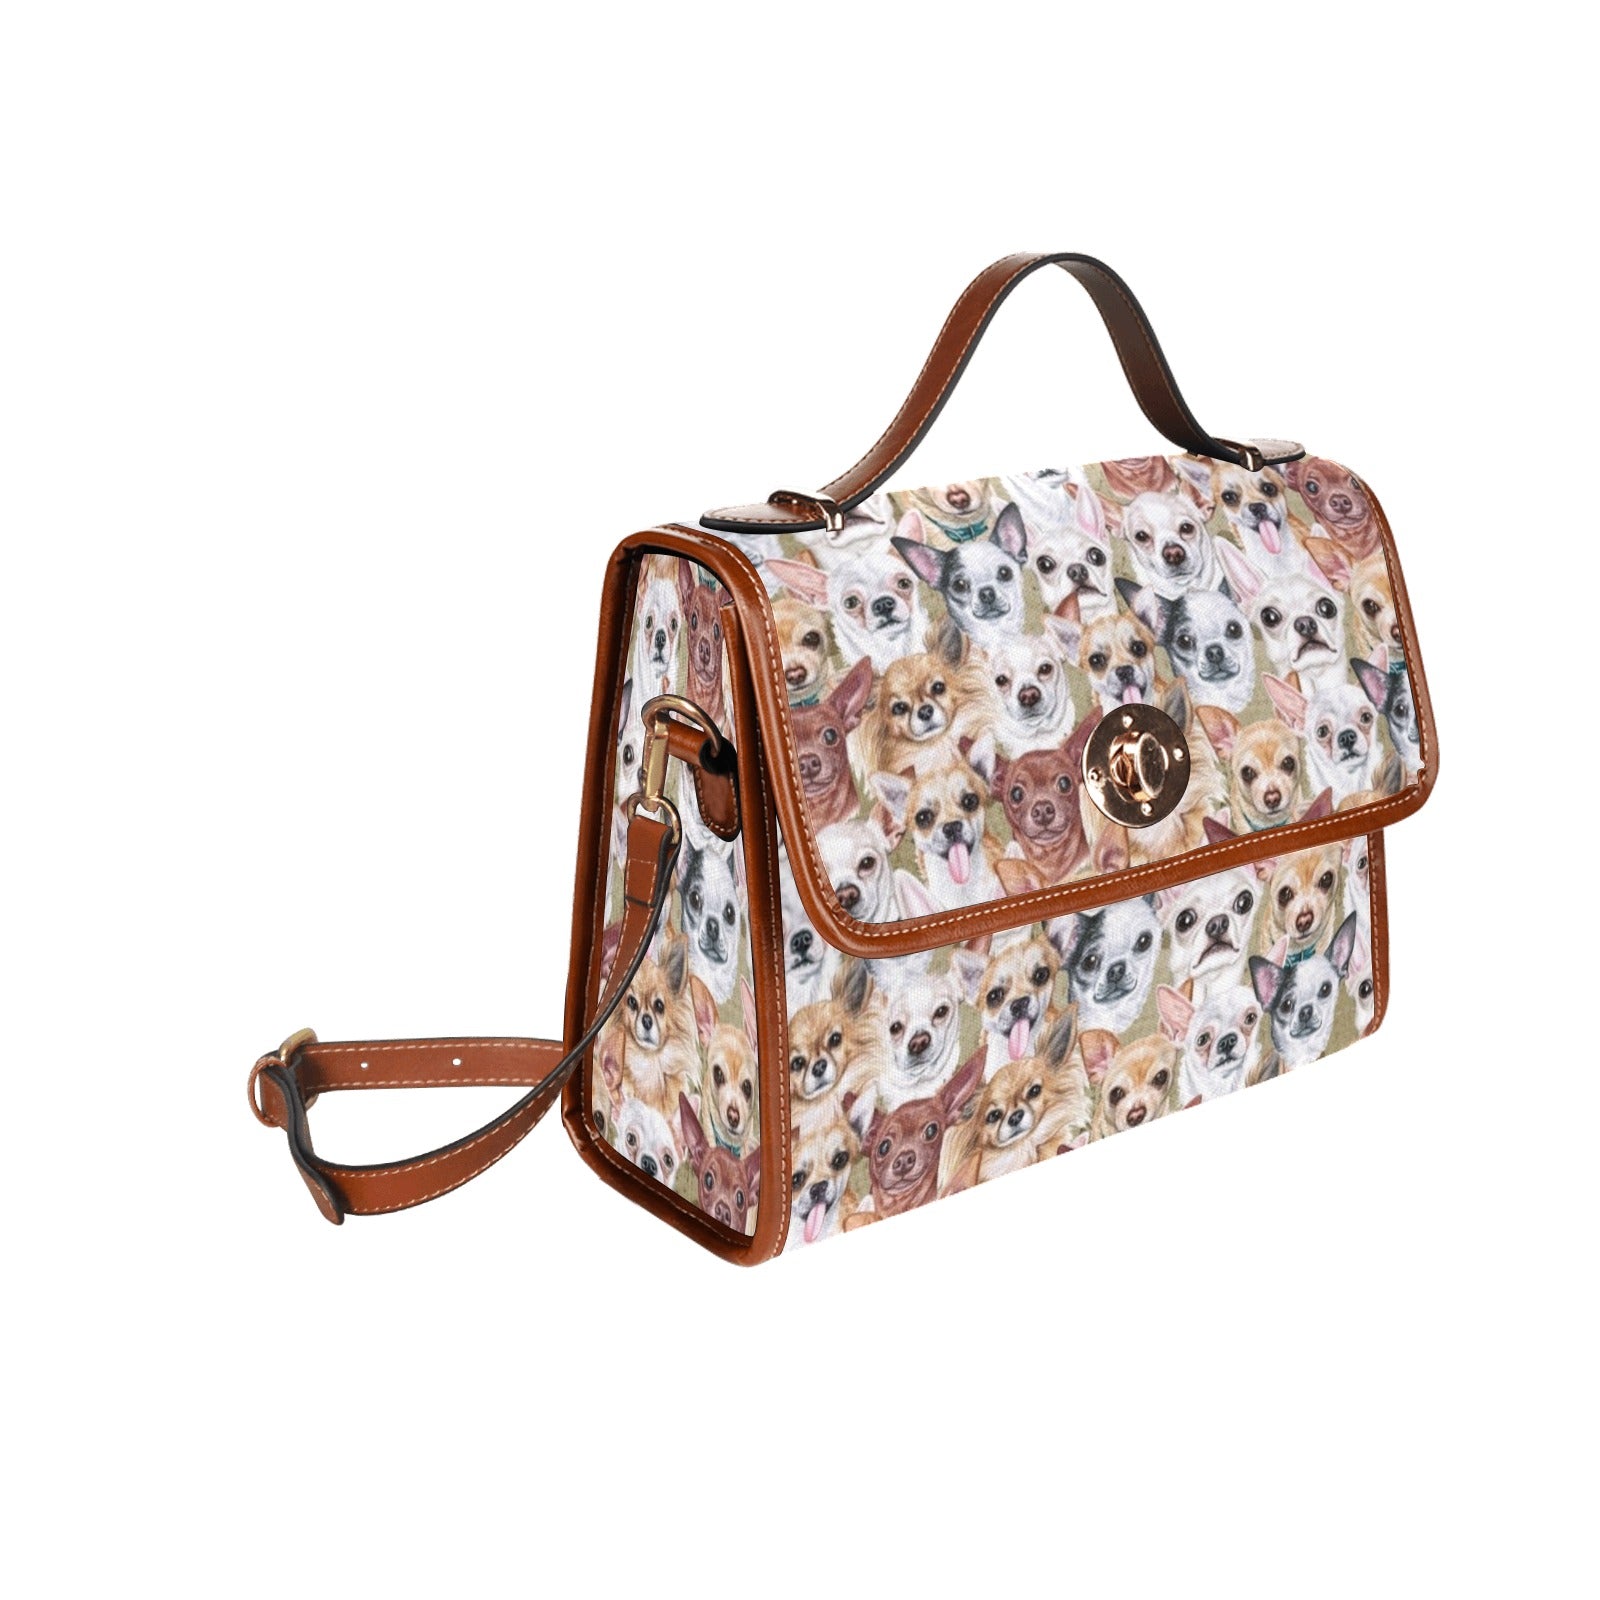 Chihuahua - Waterproof Canvas Handbag